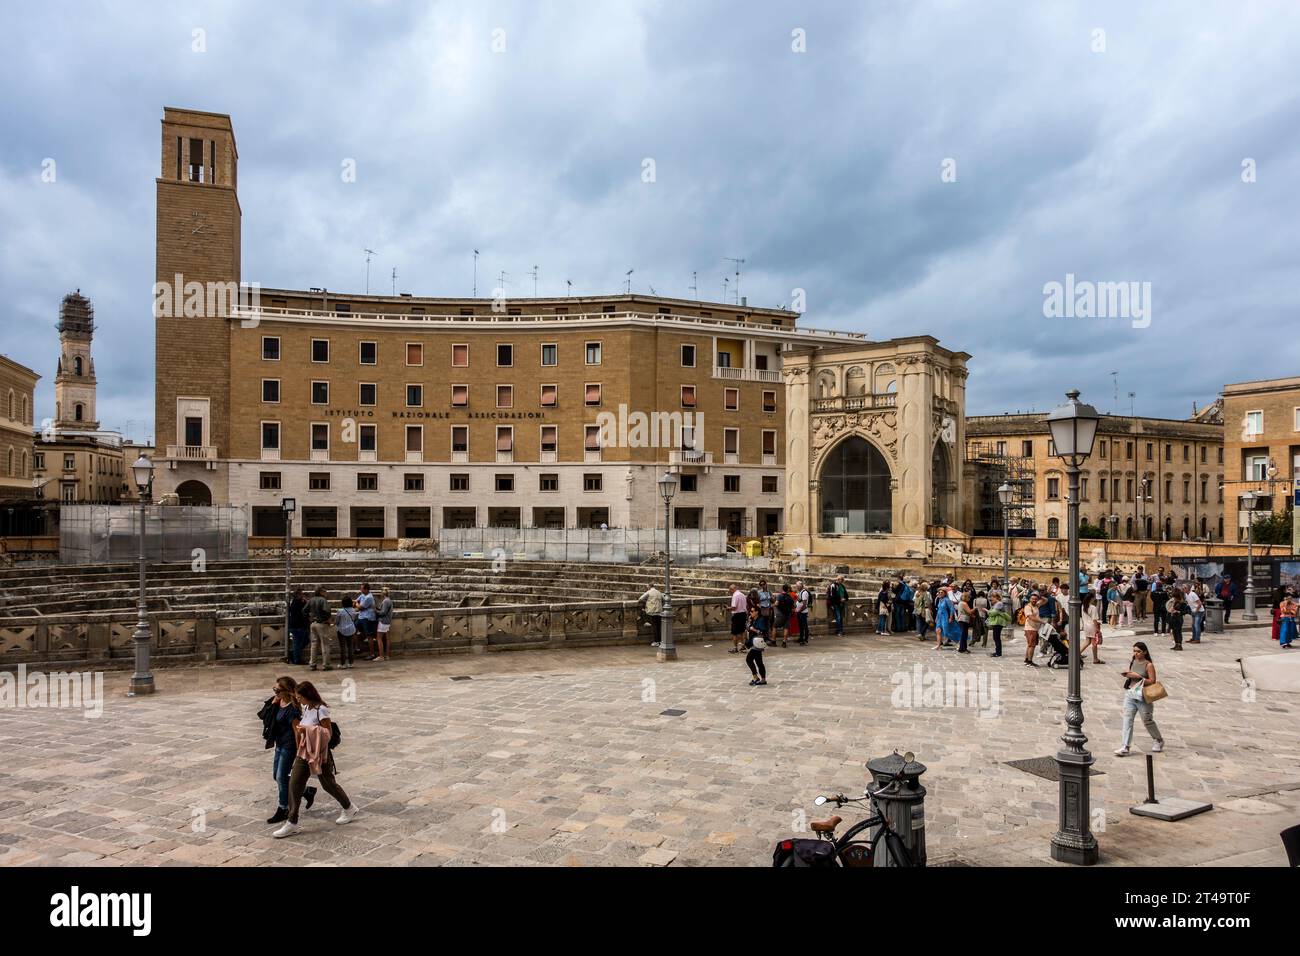 La piazza principale del centro storico di Lecce, con l'anfiteatro romano la cui esistenza fu riscoperta nel 1901. Un luogo turistico molto popolare. Foto Stock